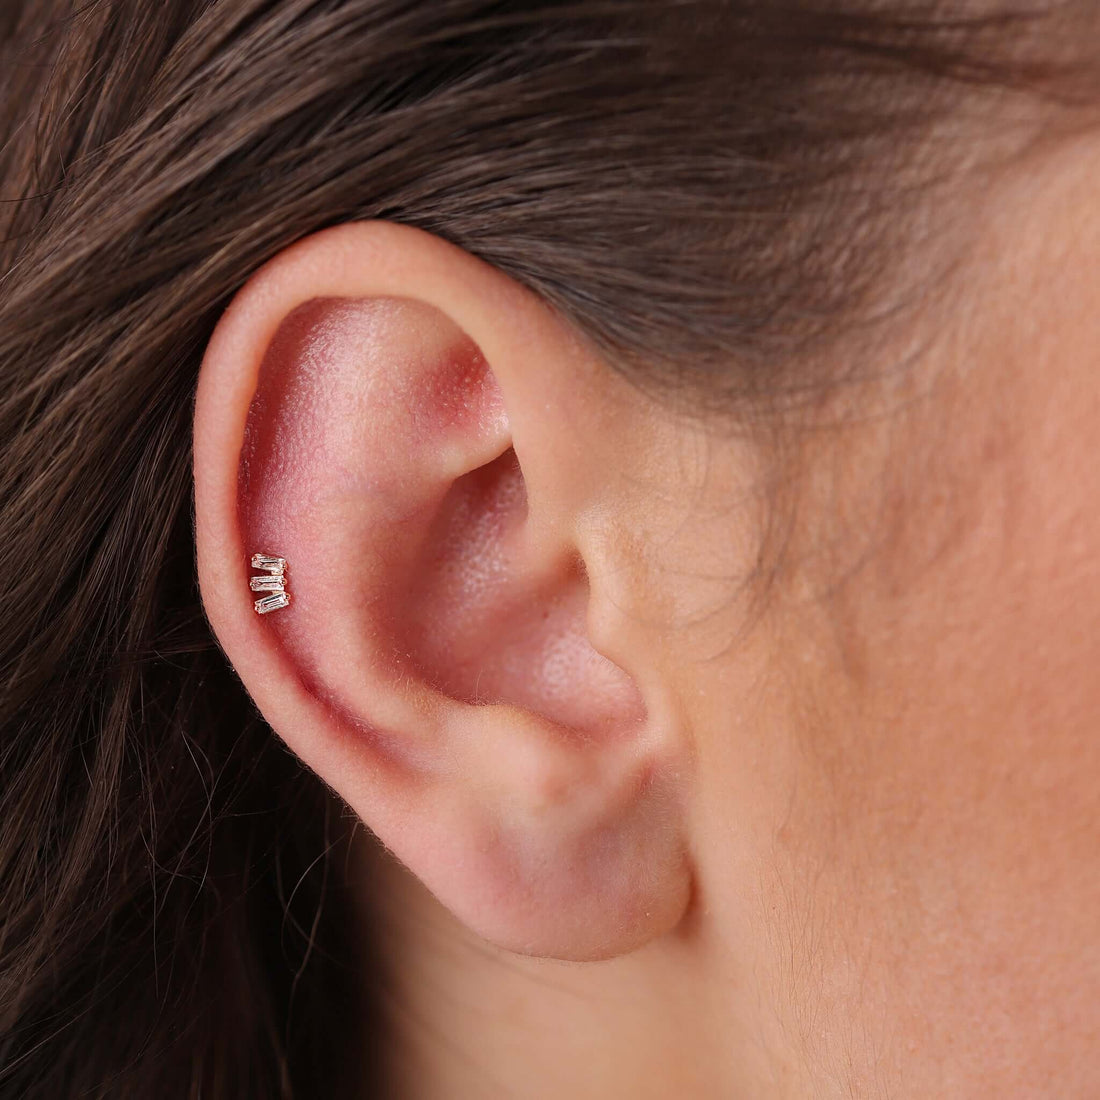 Gilda Jewelry Baguette Studs | Diamond Earrings | 14K Gold - Rose / Single: 0.06 Cts. | Cut - earrings Zengoda Shop